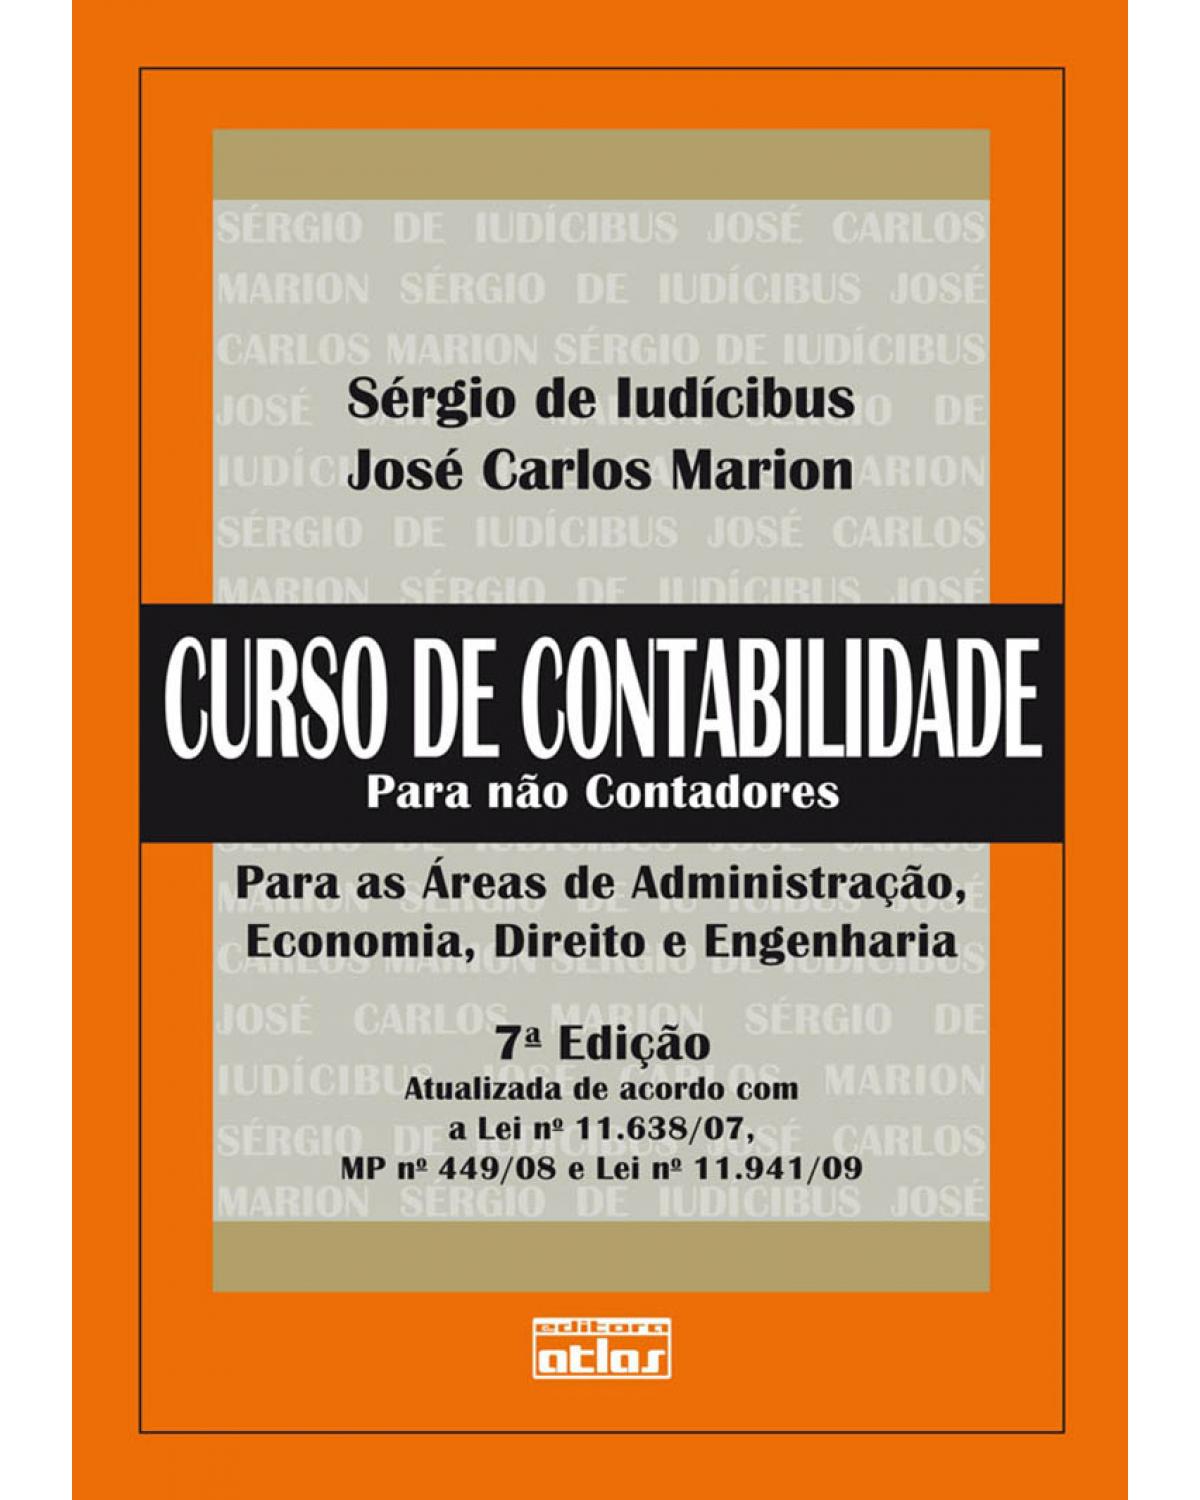 CURSO DE CONTABILIDADE PARA NÃO CONTADORES - Livro Texto - Para as áreas de administração, economia, direito e engenharia - 7ª Edição | 2011